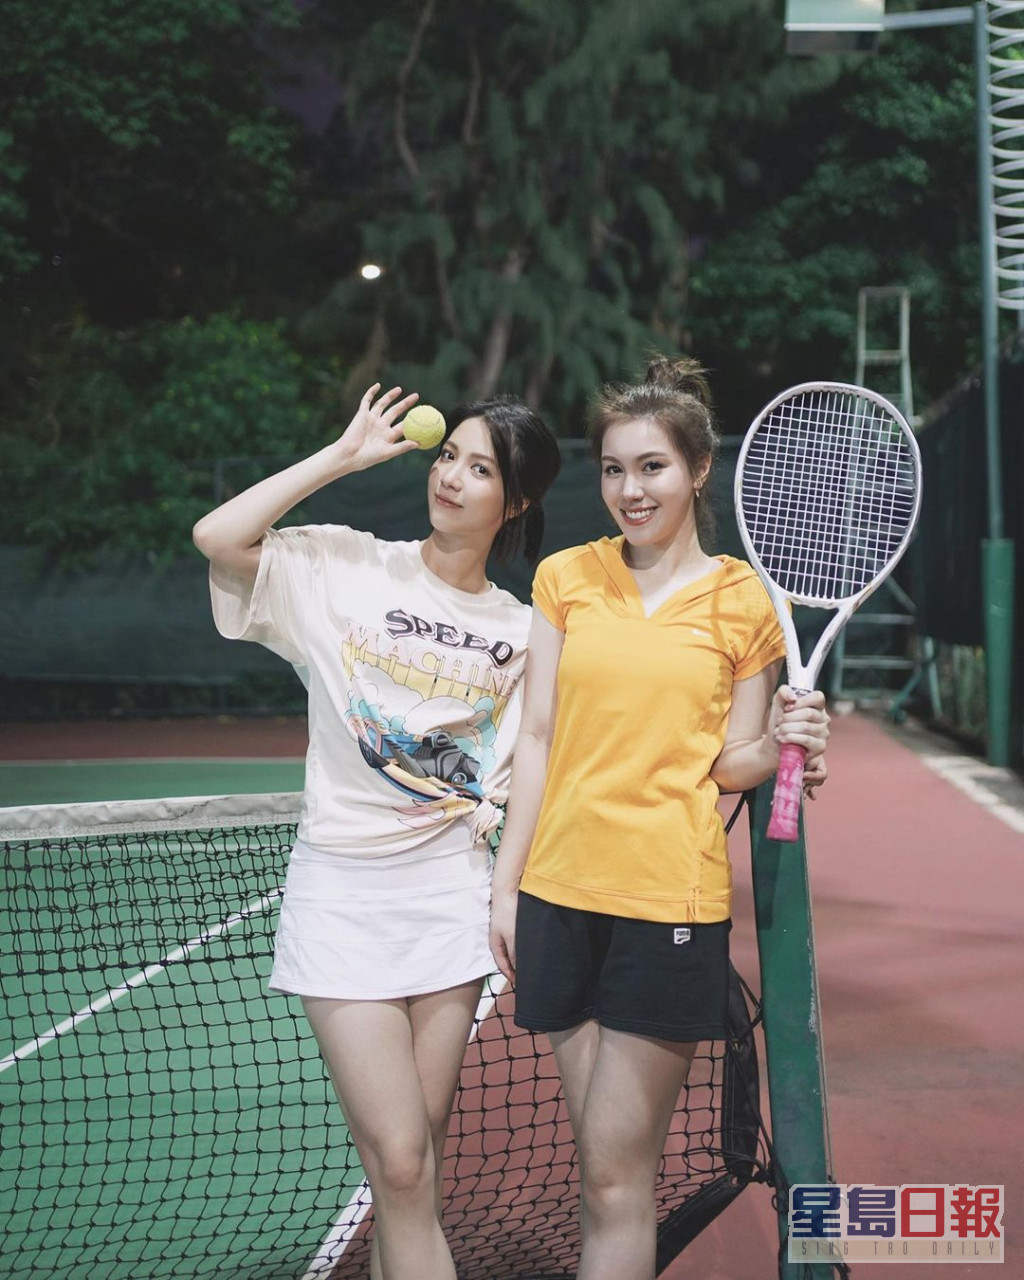 又再与师姐陈晓华相约打网球。